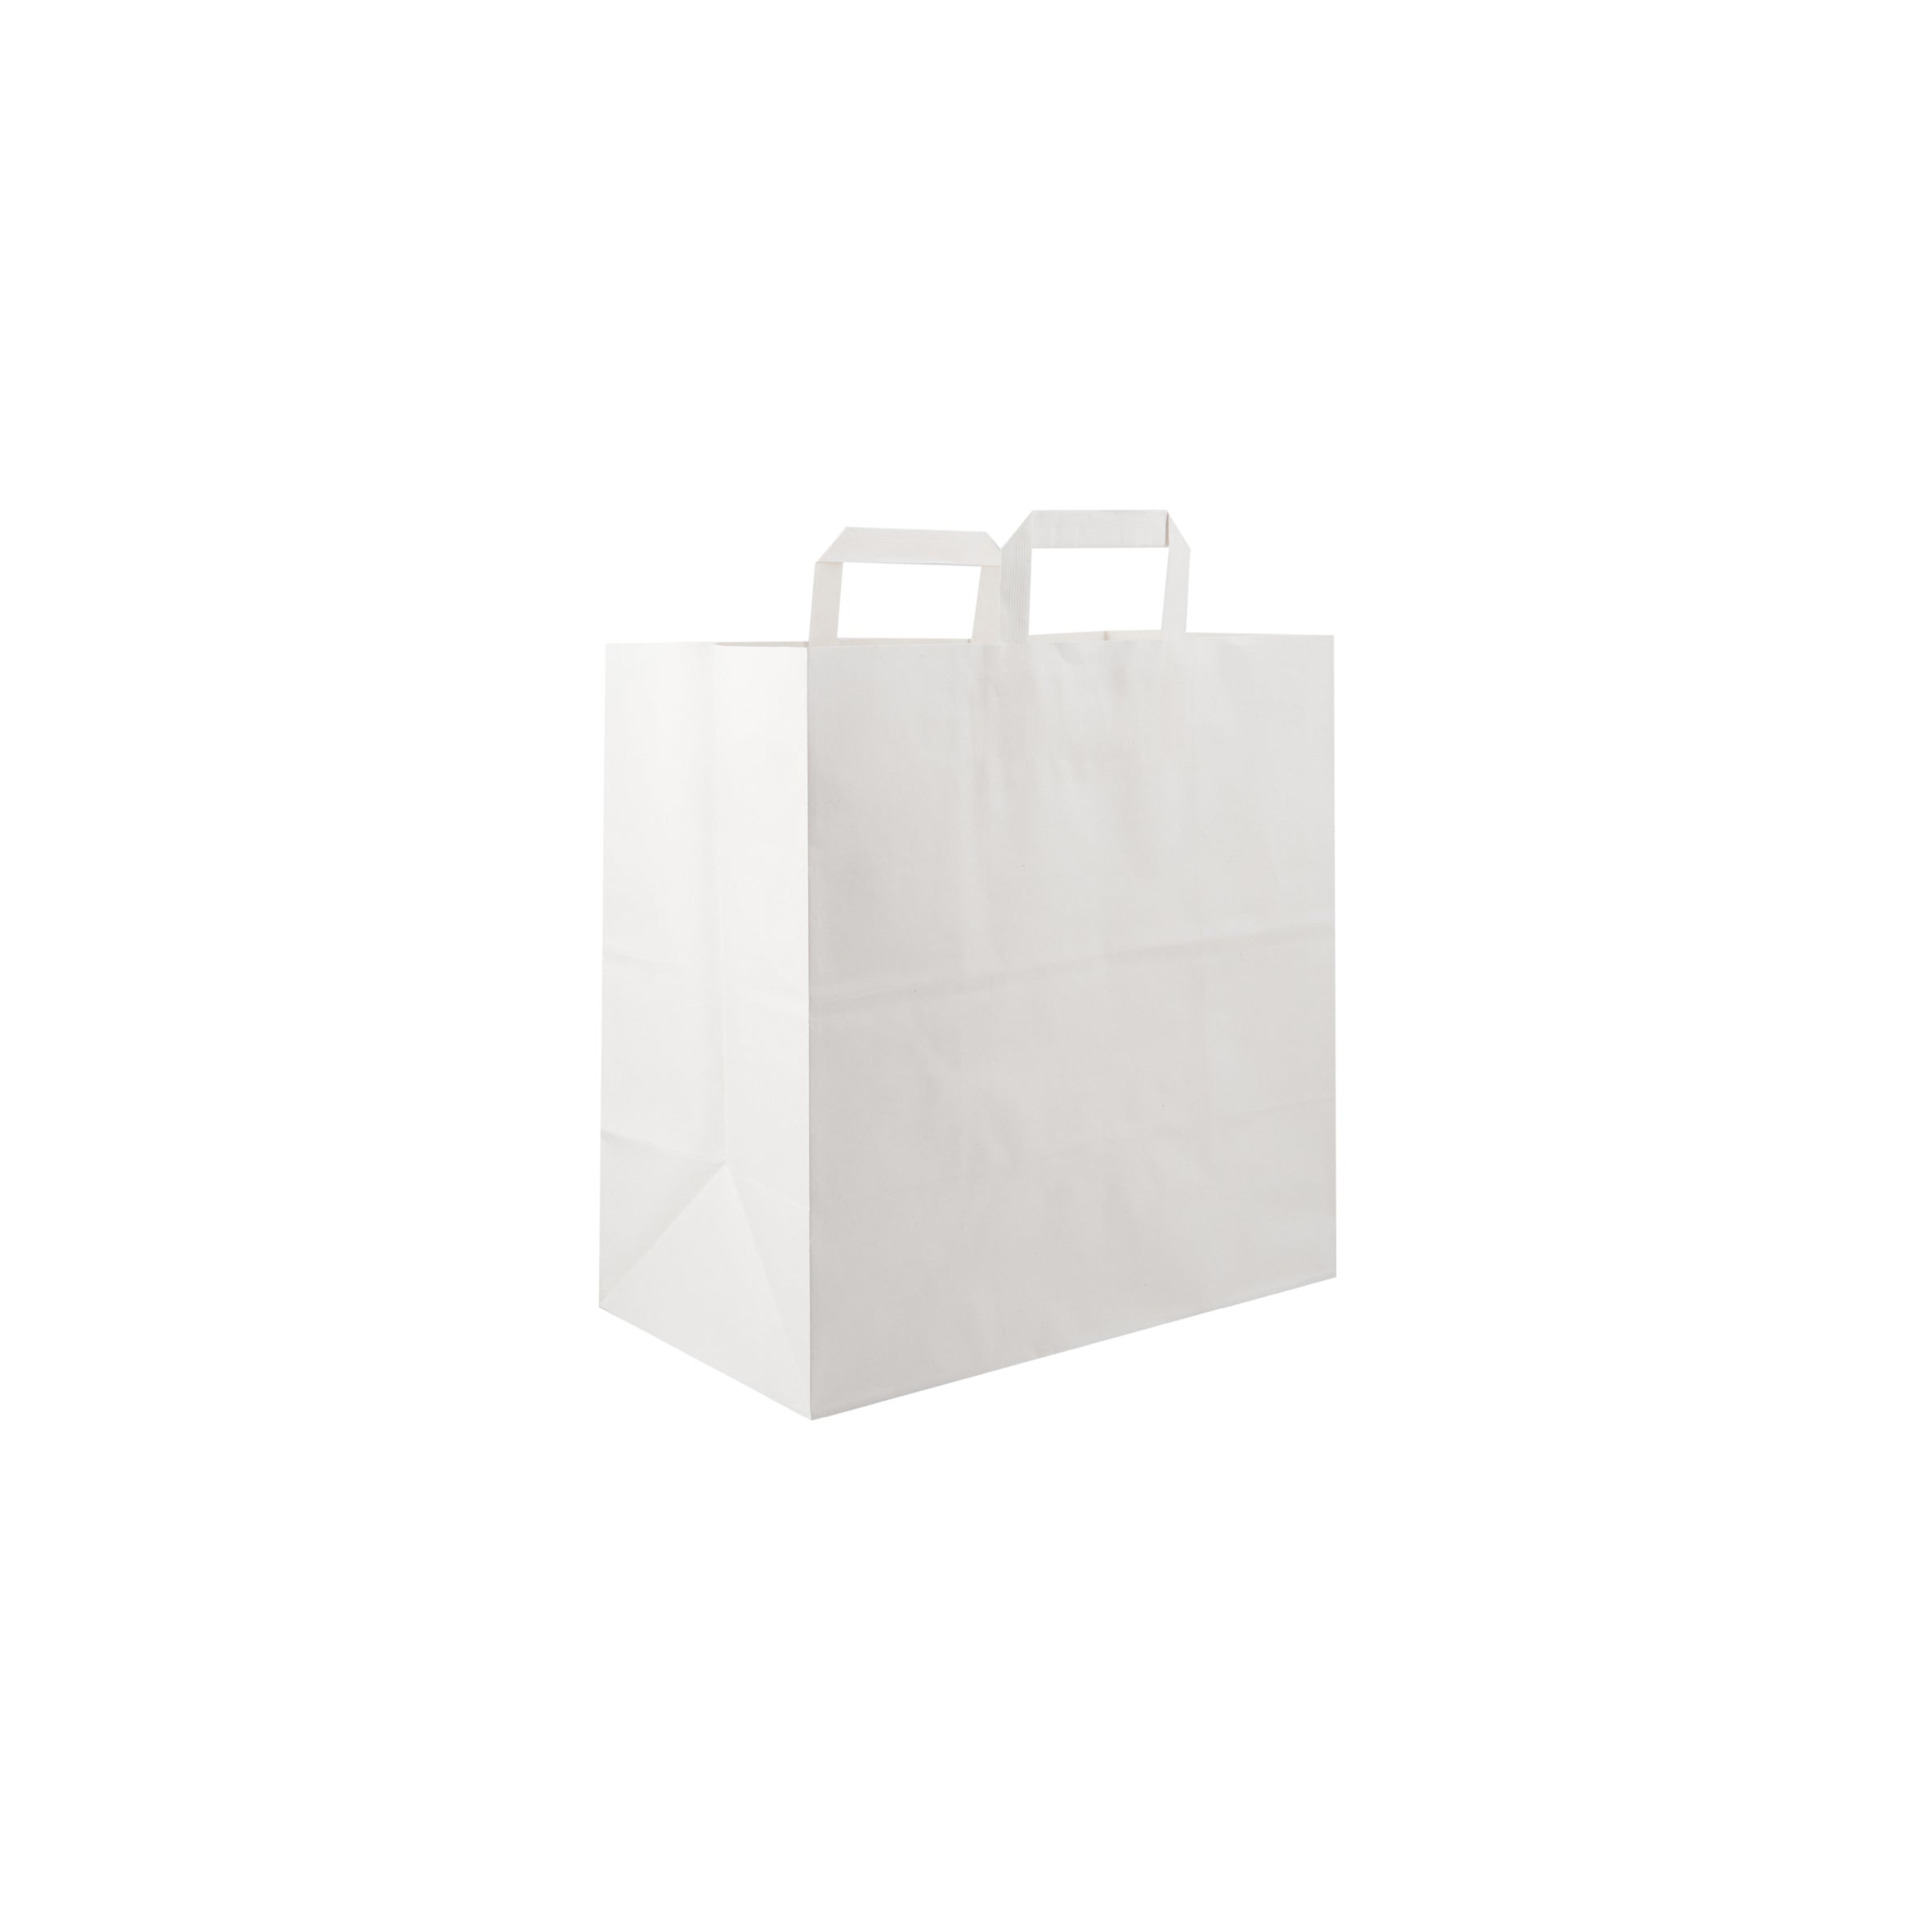 5 Pieces Paper Bag White Flat Handle 34x18x33.5 cm